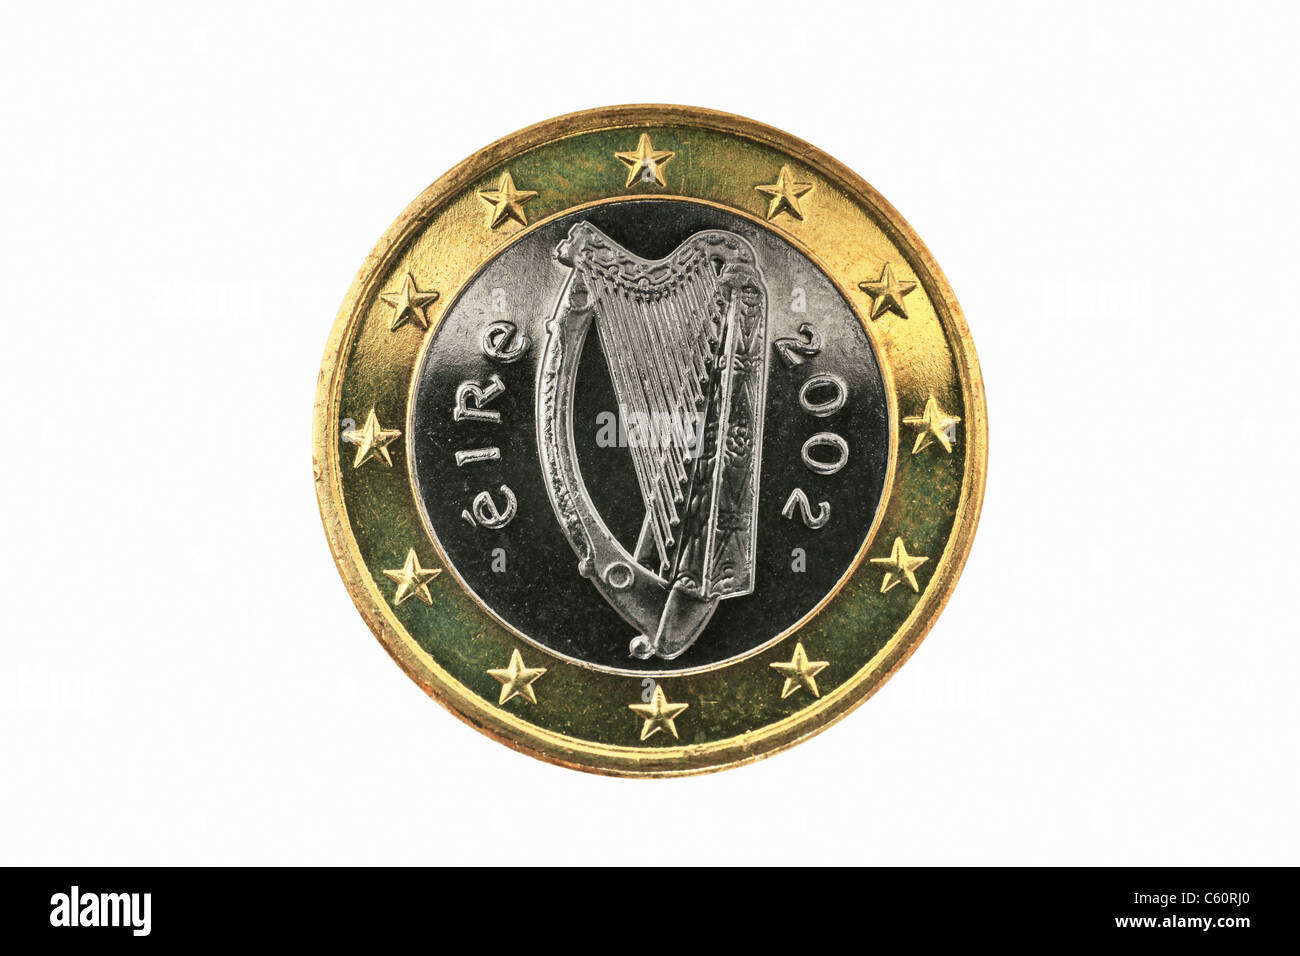 Detailansicht der Rückseite mit 1- Euro Münze aus Schweiz | photo détail d'un verso d'une pièce de 1 Euro de l'Irlande Banque D'Images